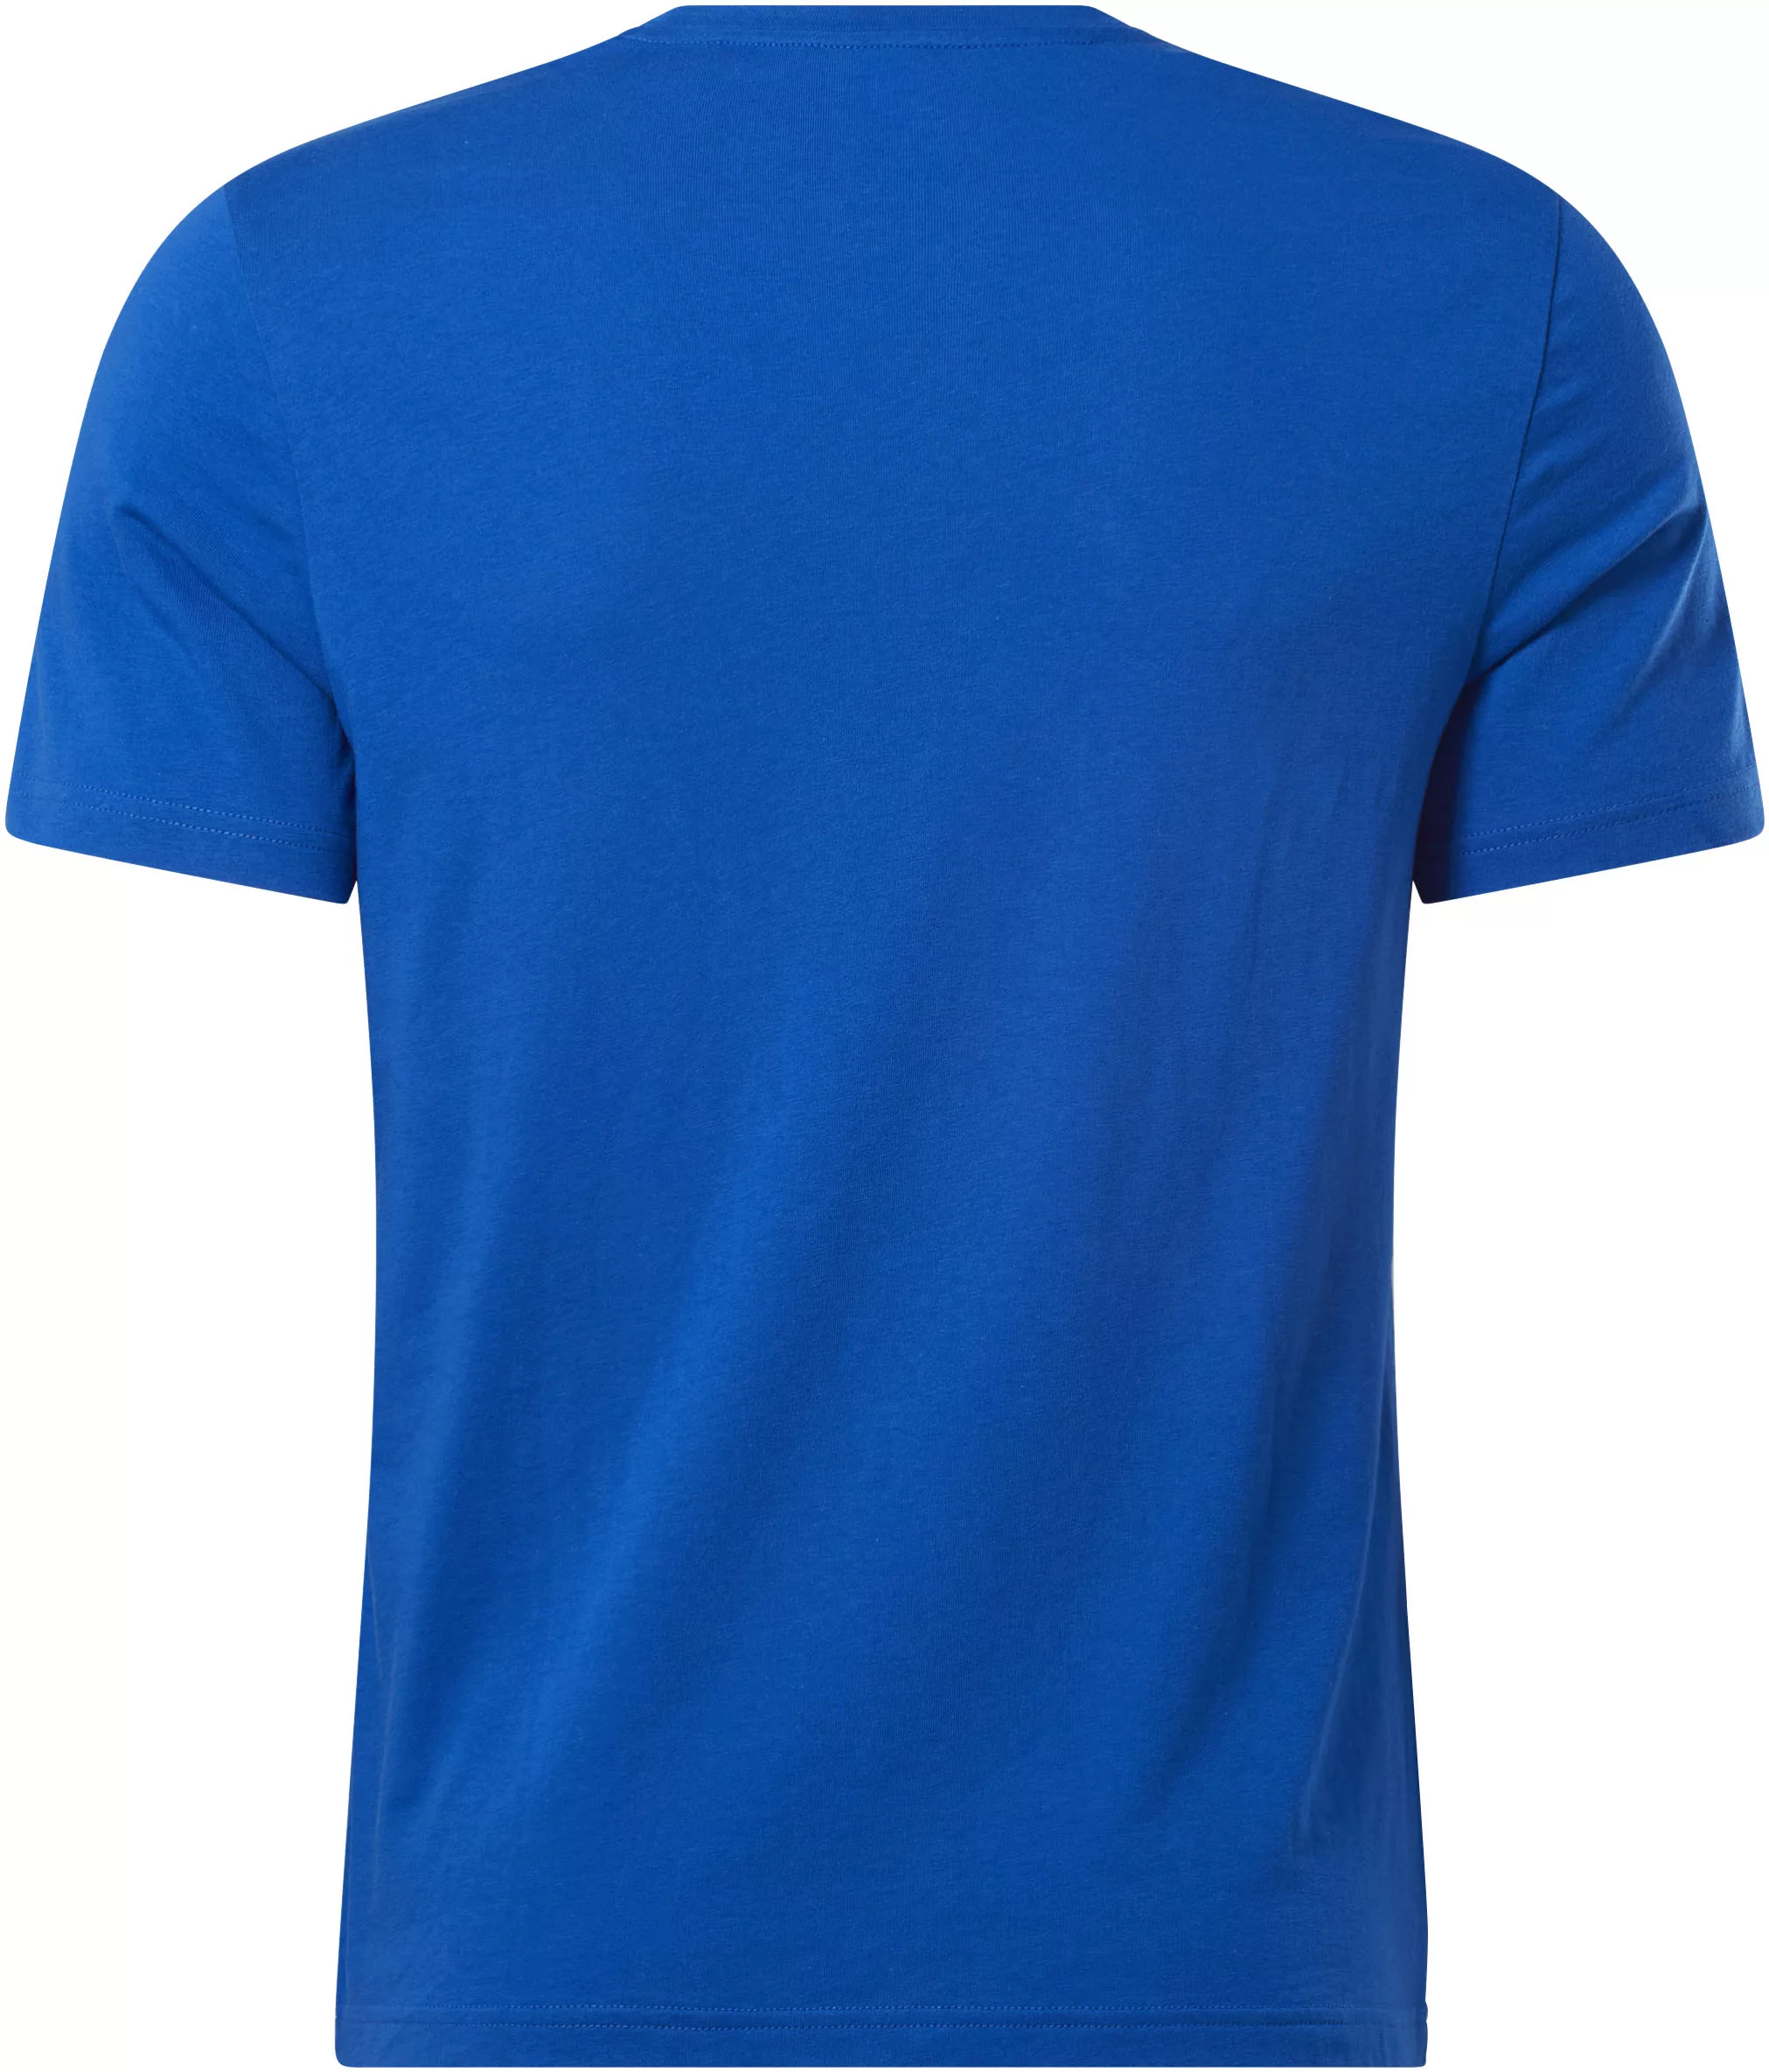 Reebok T-Shirt günstig online kaufen